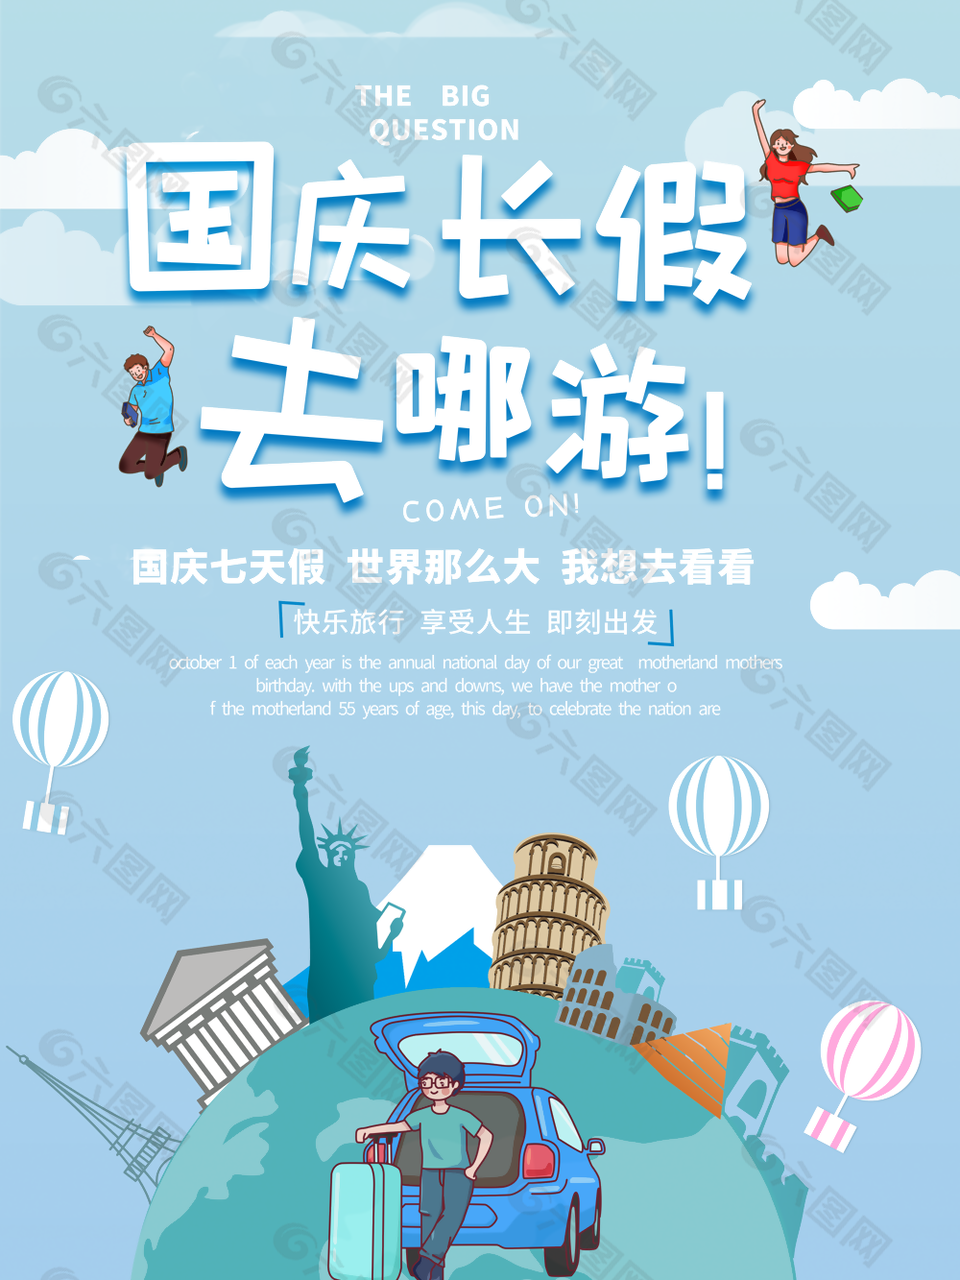 个性卡通插画风国庆旅游海报素材设计